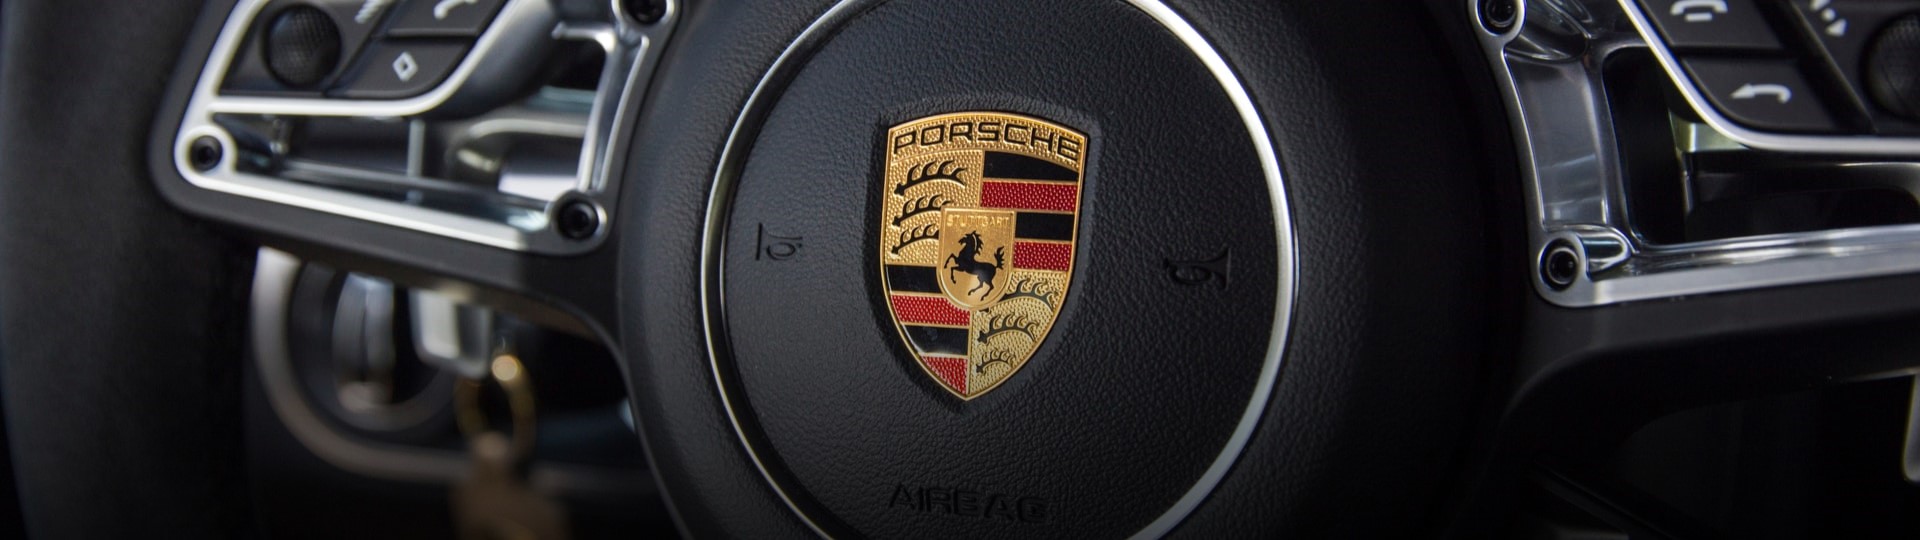 Automobilka Porsche prodala v pololetí dosud nejvíce vozů v historii